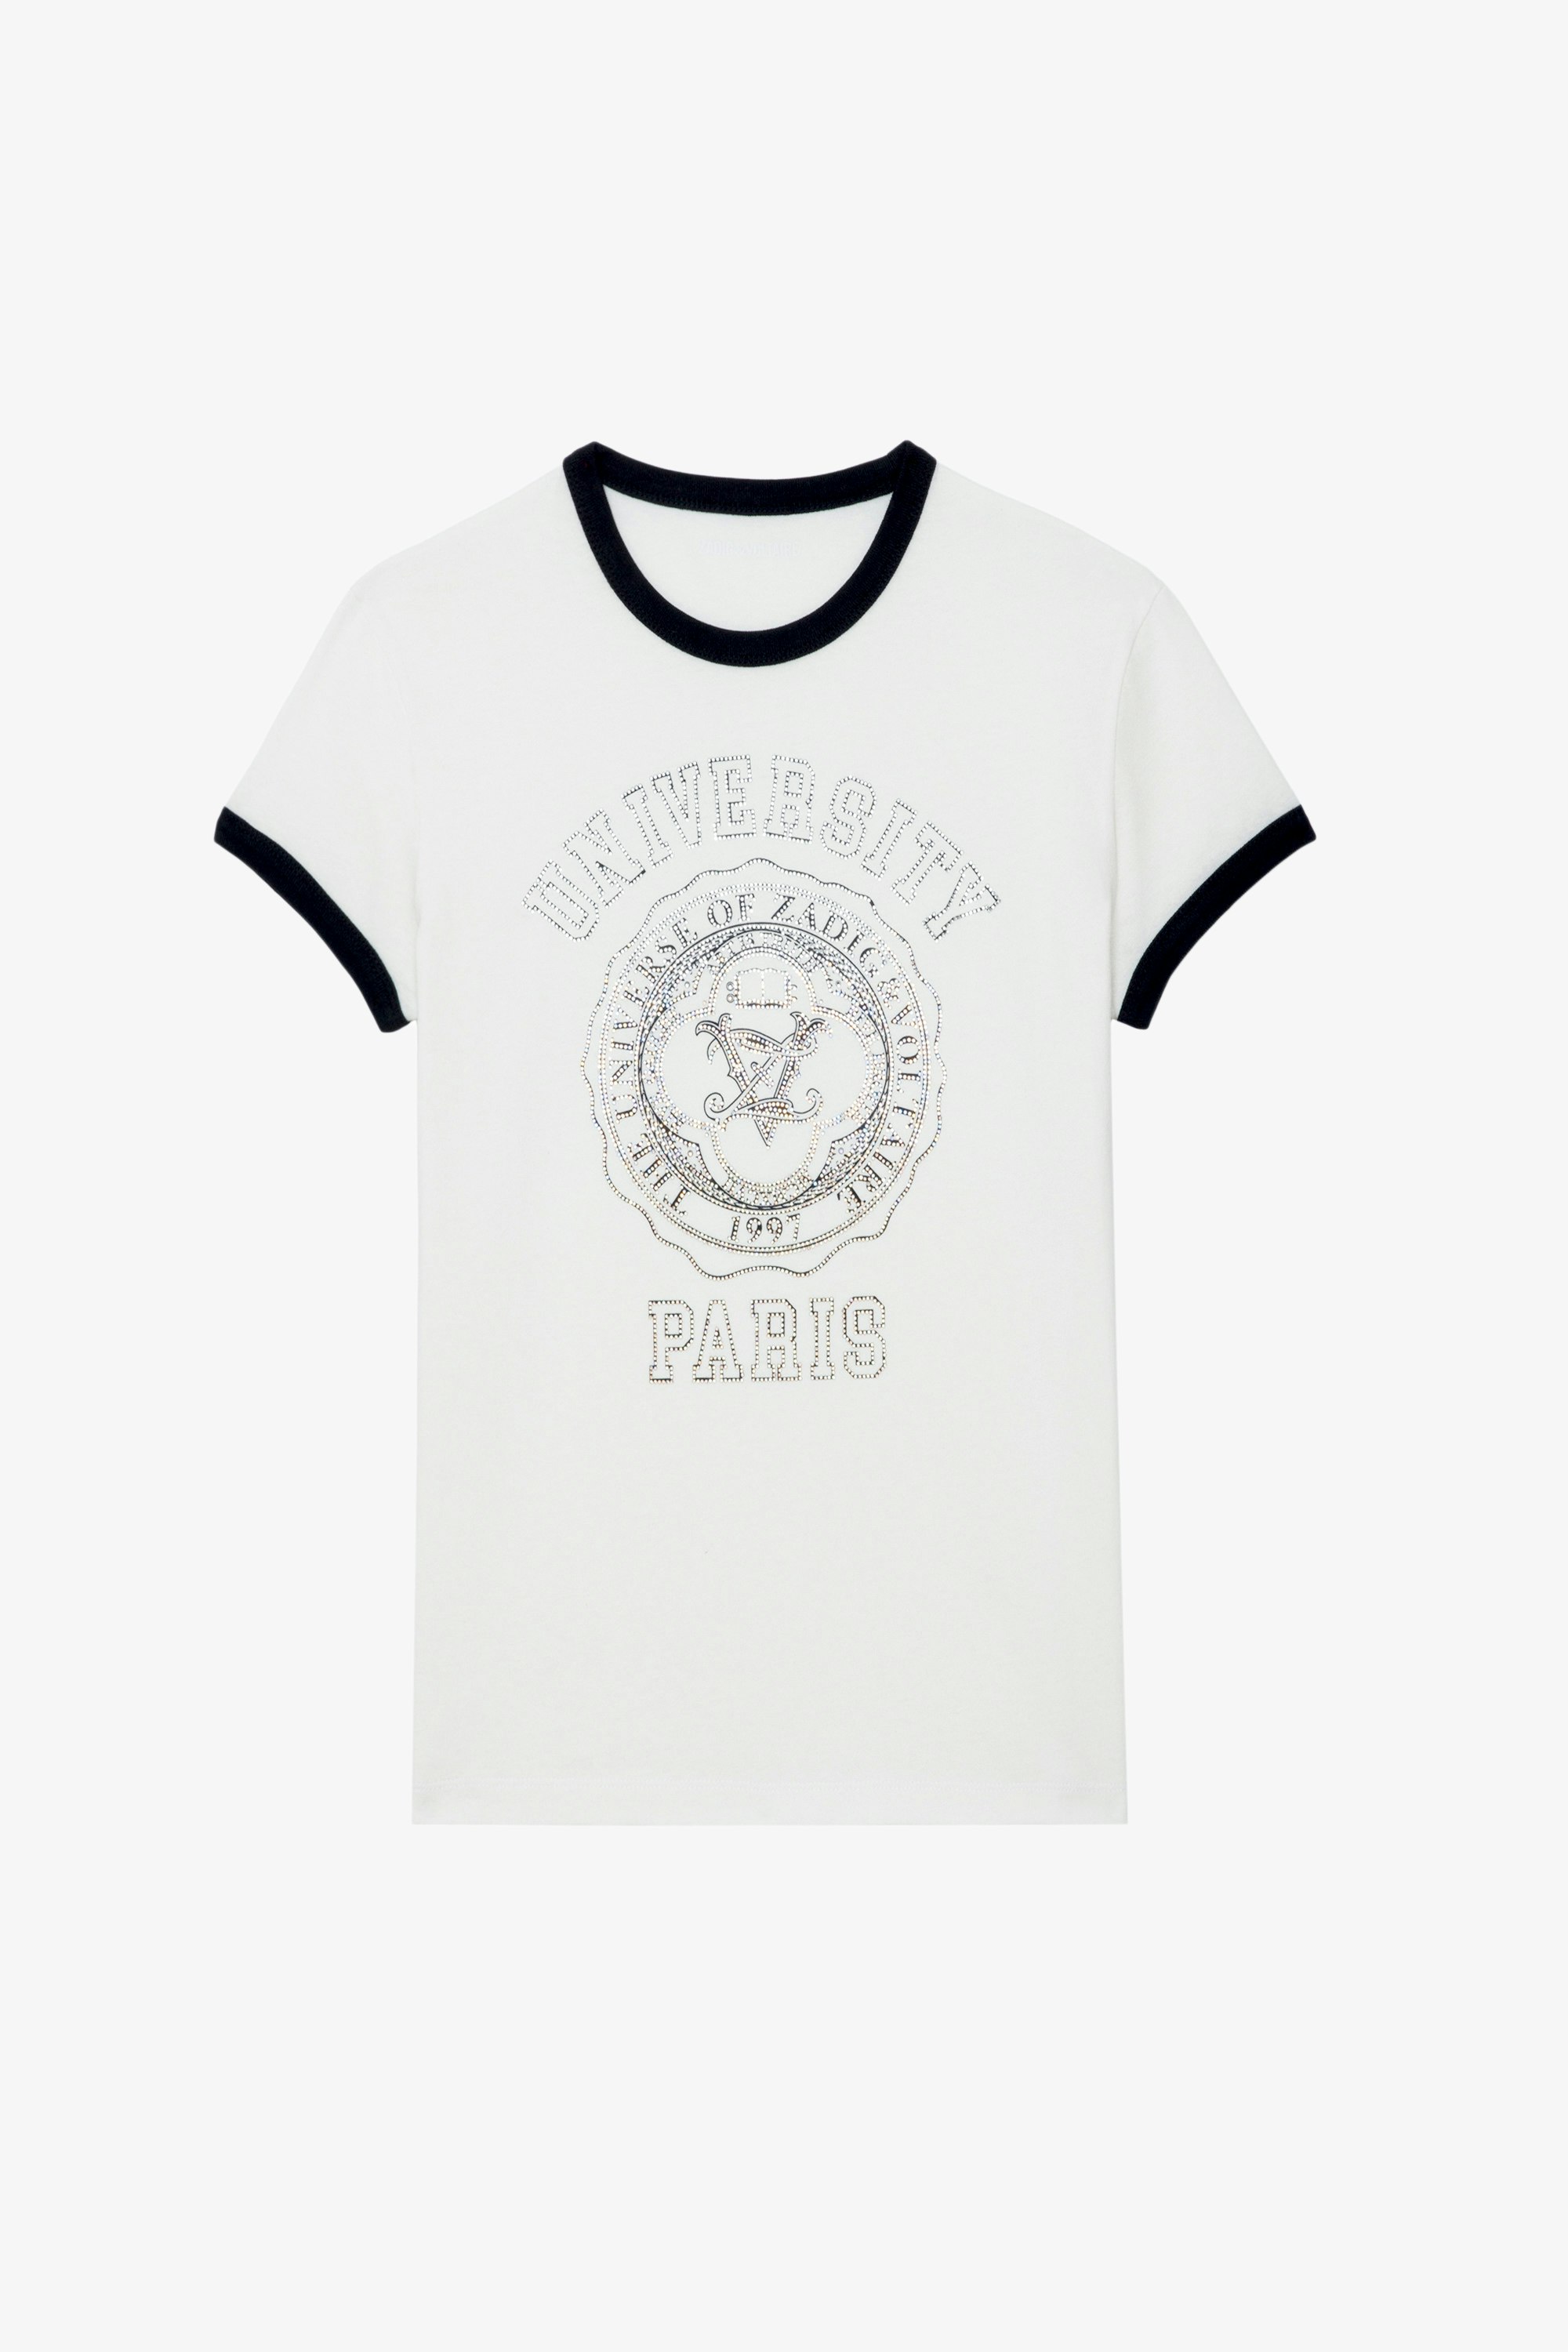 Walk University Diamanté T-shirt - White cotton short-sleeved T-shirt with diamanté-embellished University motif and contrasting trim.